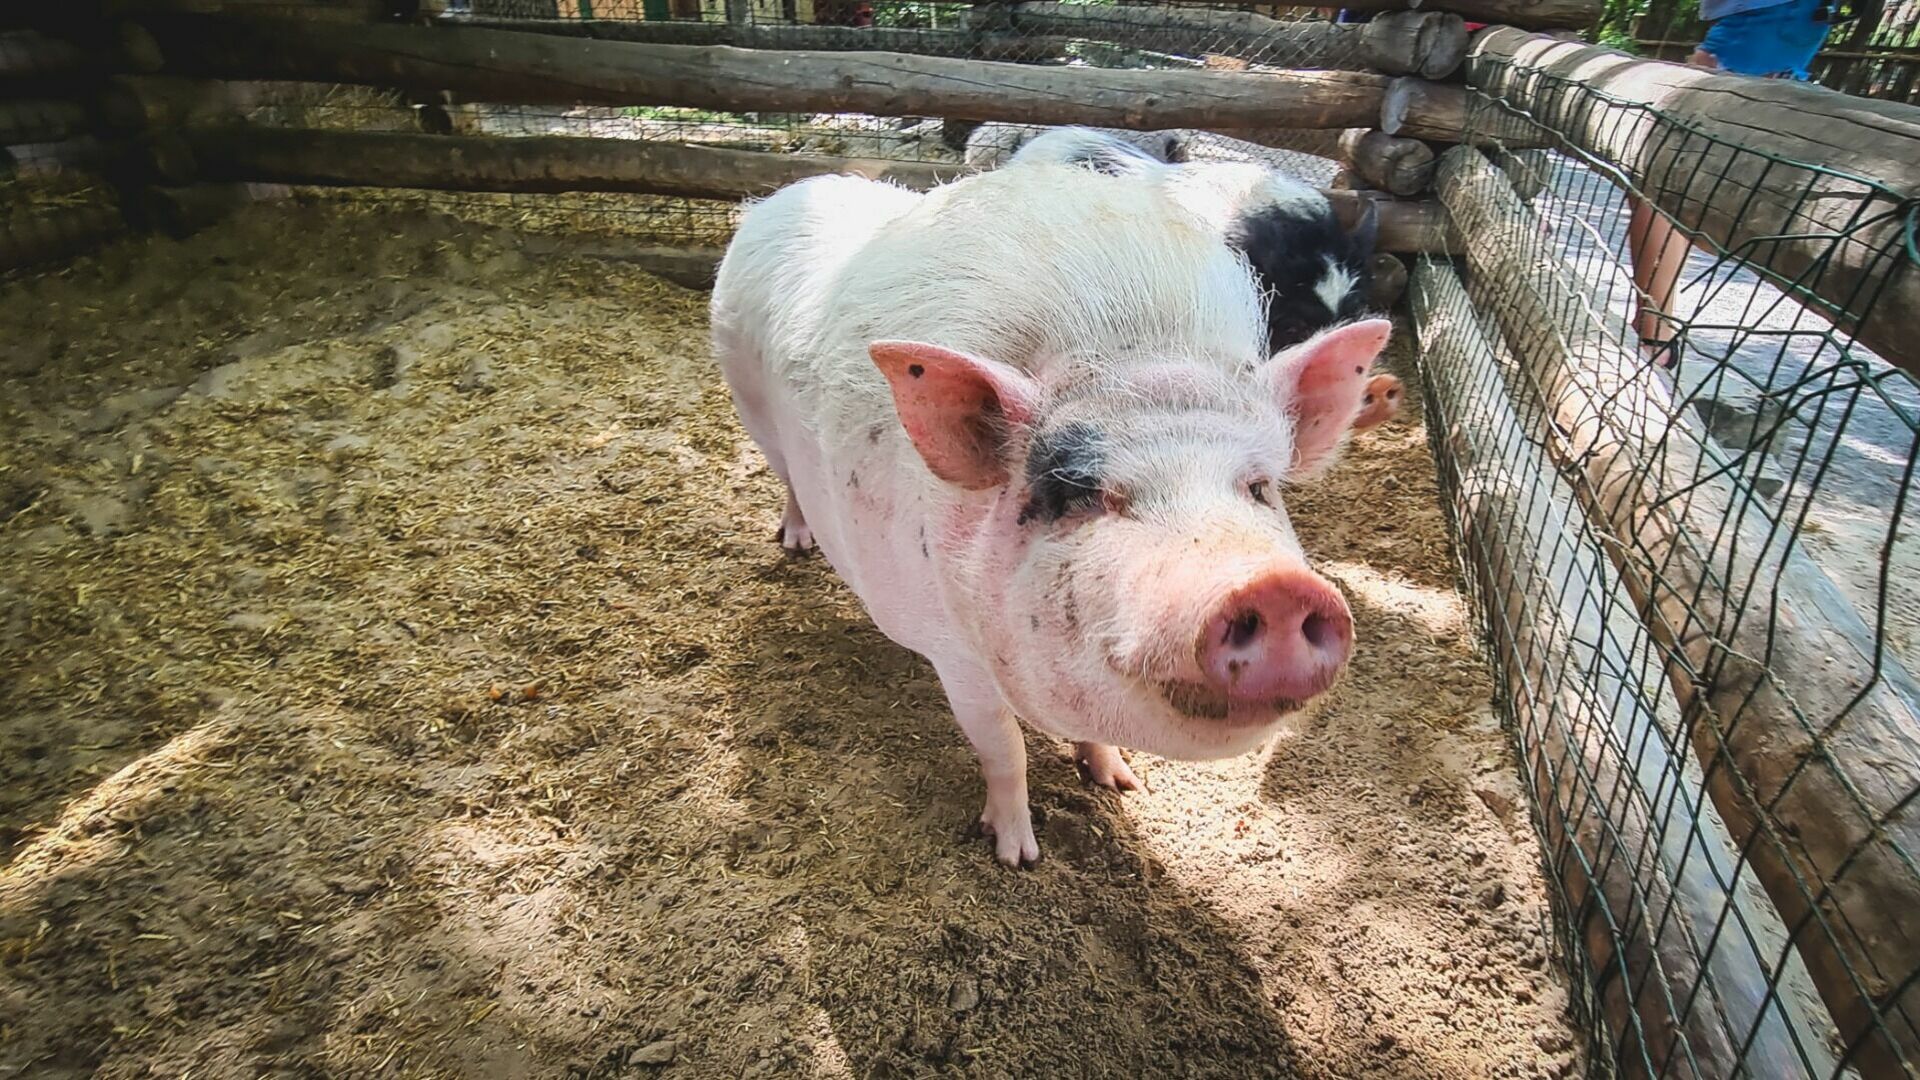 ДНК свиньи нашли в говяжьих колбасах и сардельках на Ставрополье